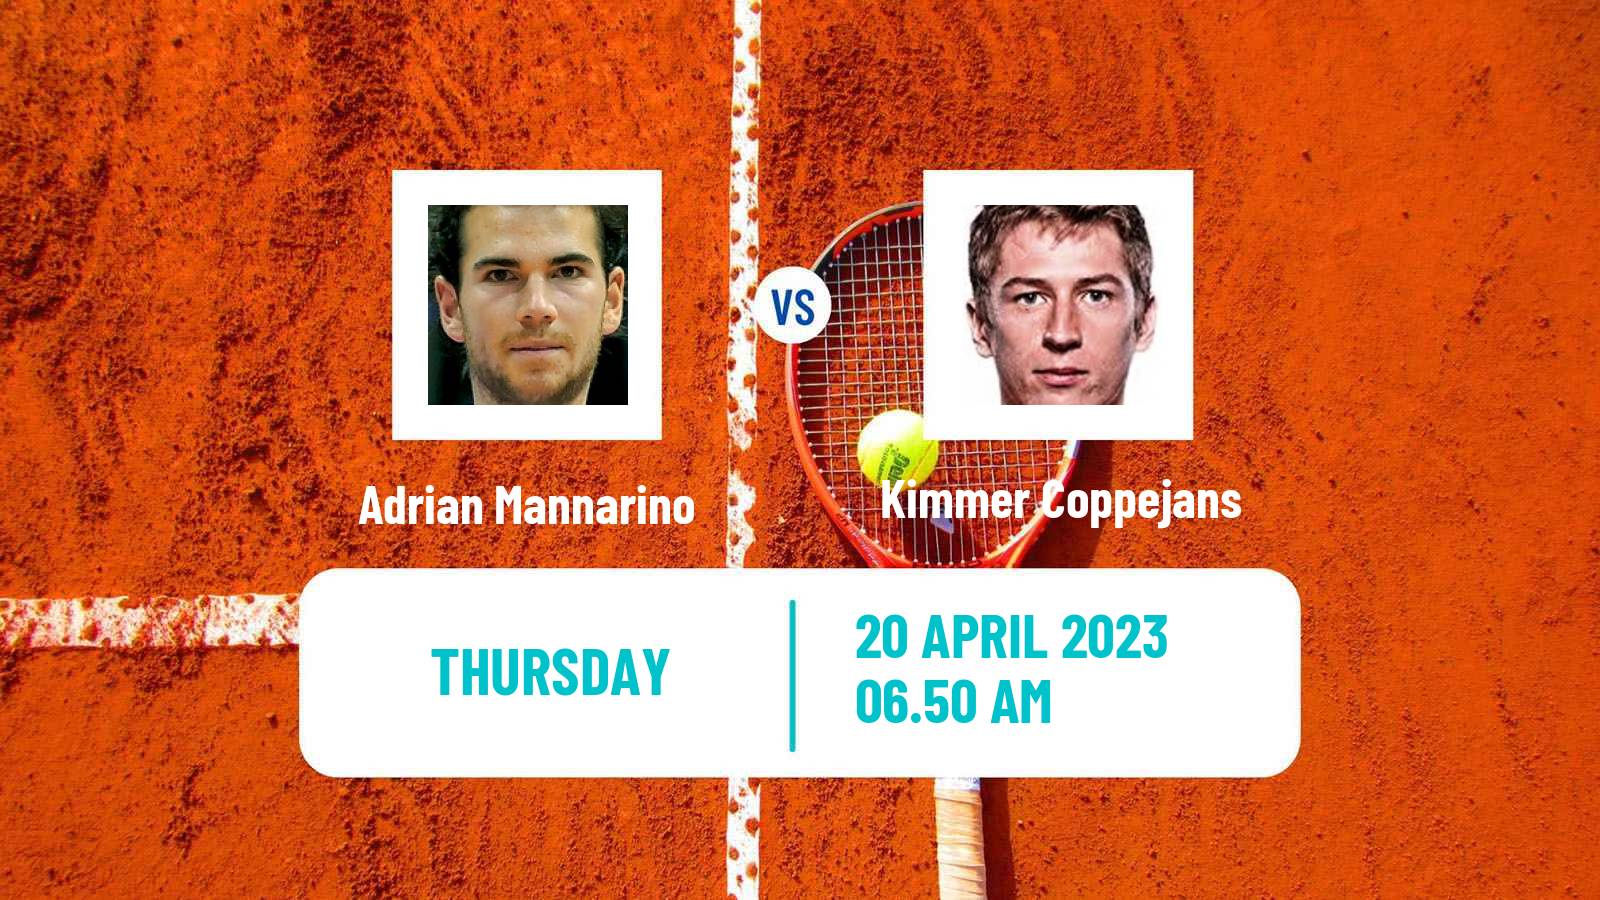 Tennis ATP Challenger Adrian Mannarino - Kimmer Coppejans